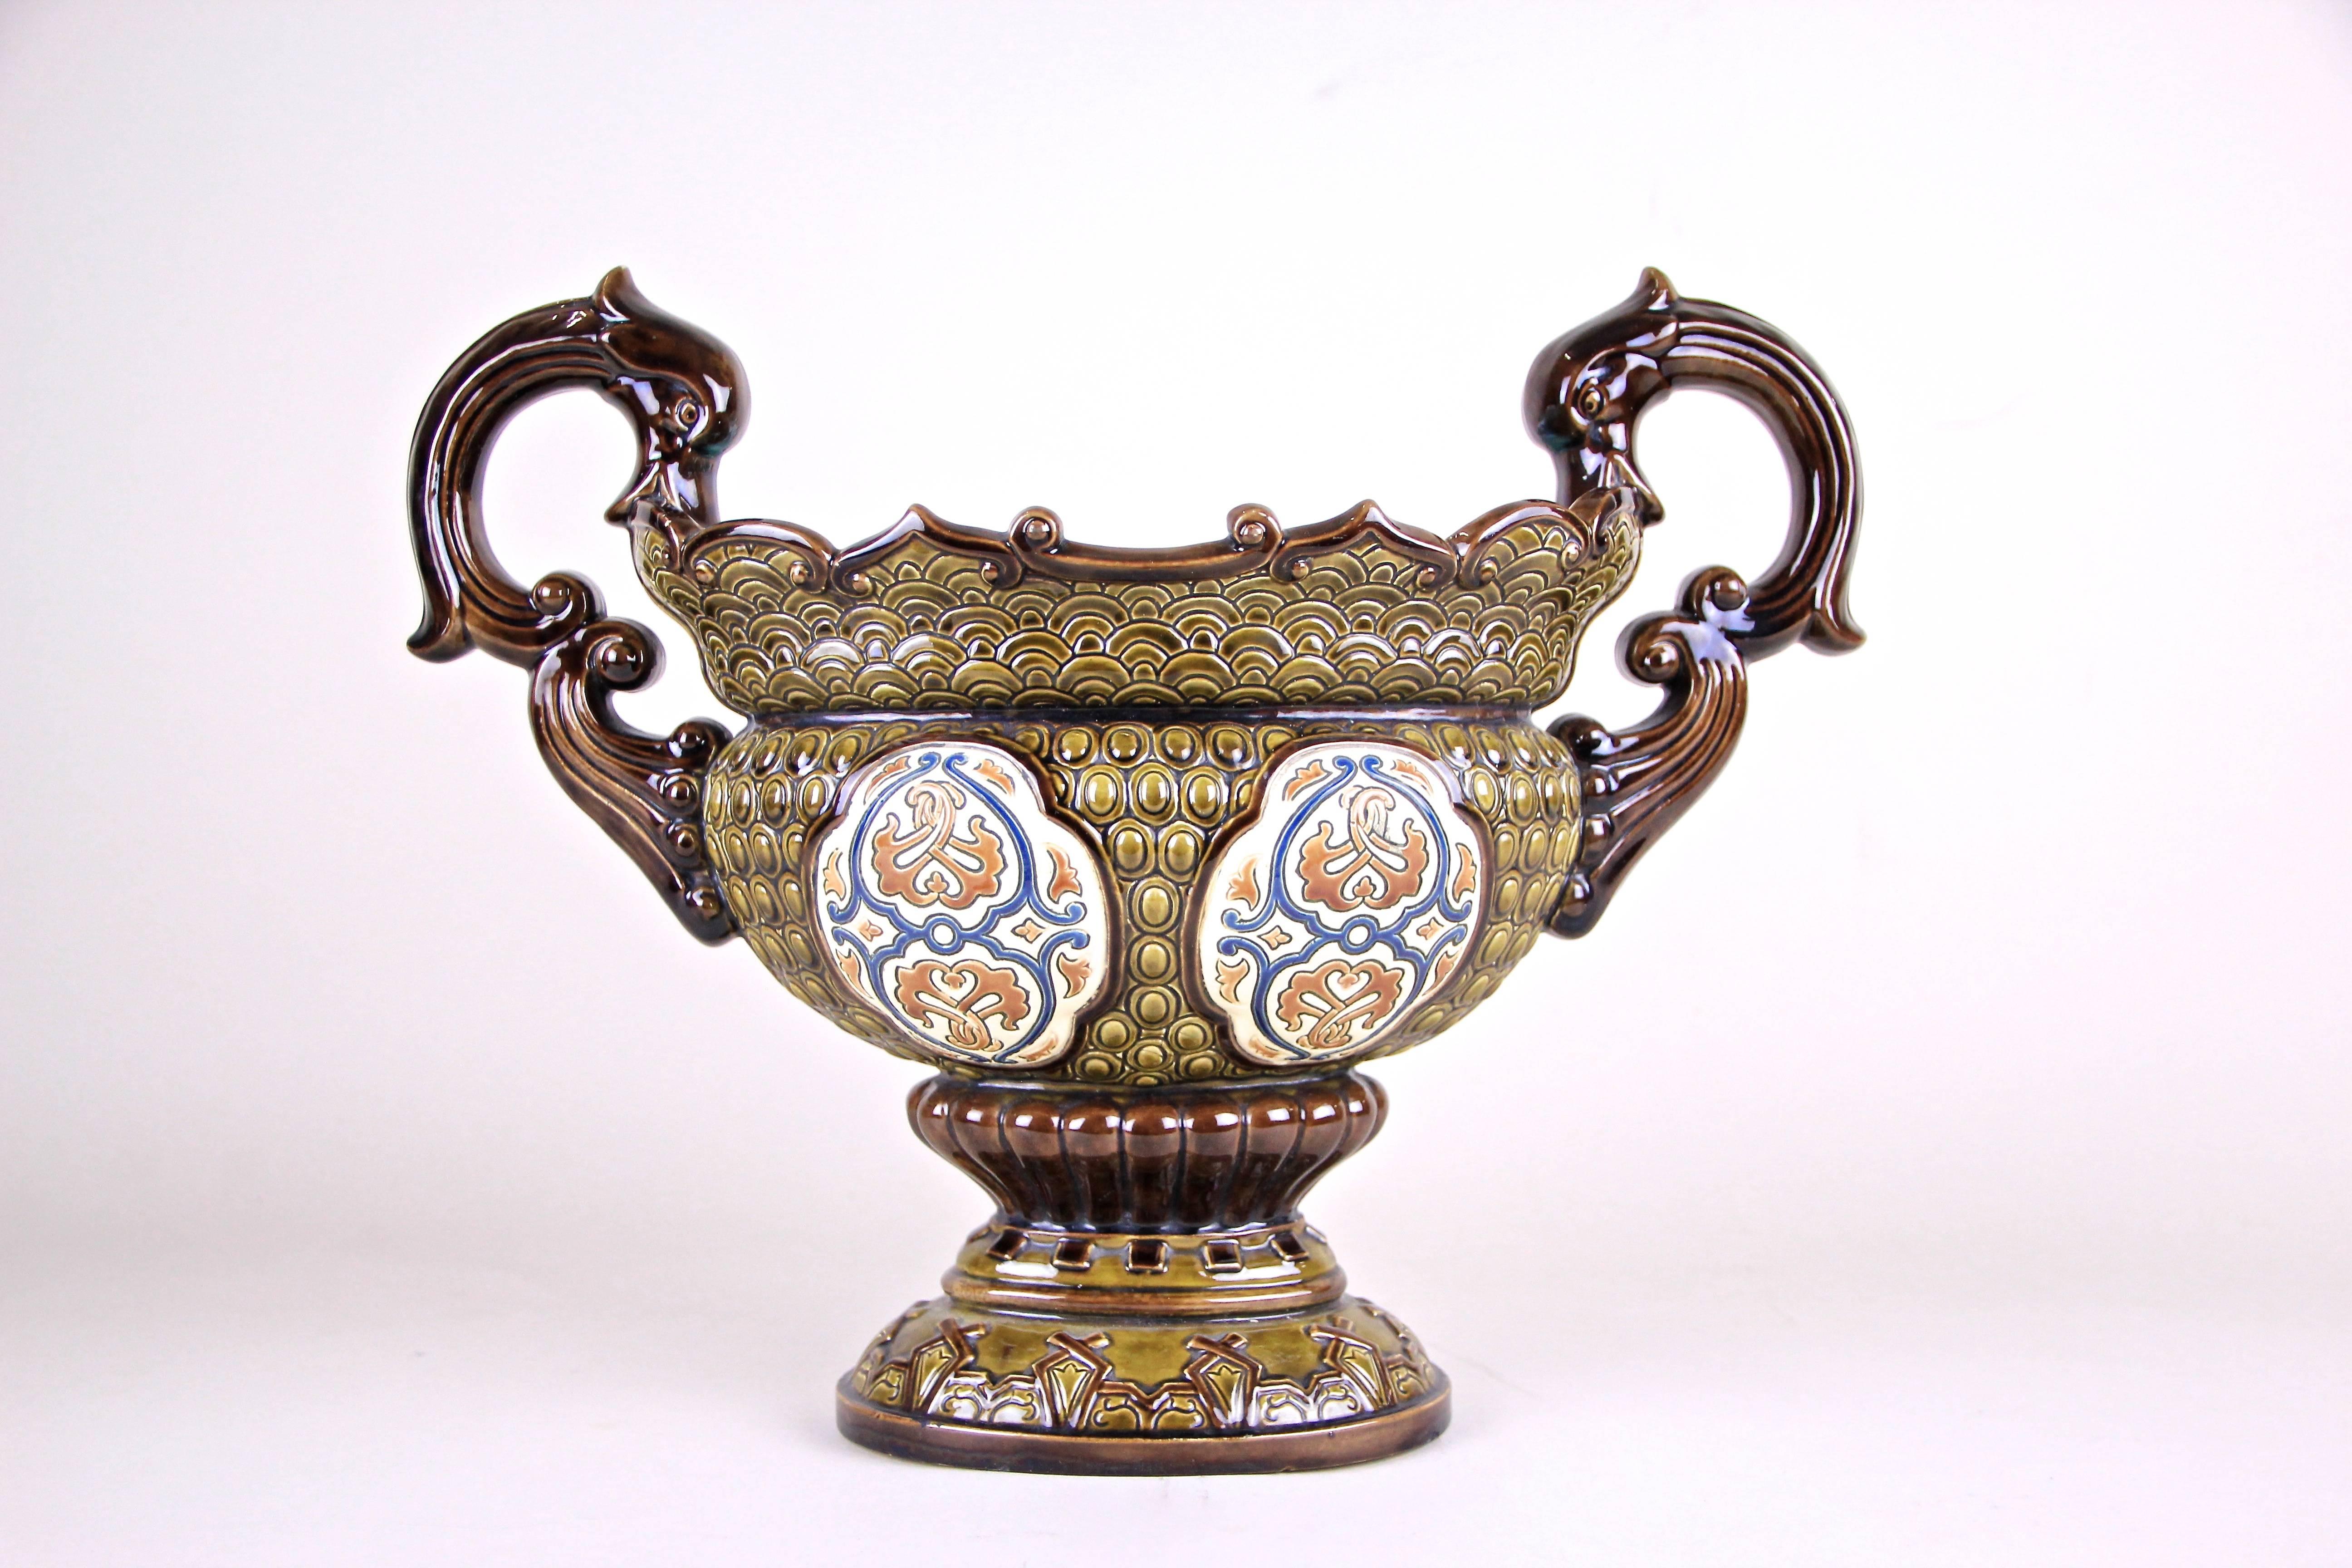 Diese schöne Majolika Jardinière von Gerbing & Stephan kommt mit einem erstaunlichen gearbeiteten Design und wurde von der berühmten Keramik / Majolika-Hersteller um 1890 produziert. Schöne warme Erdtöne und handgemalte Applikationen auf beiden